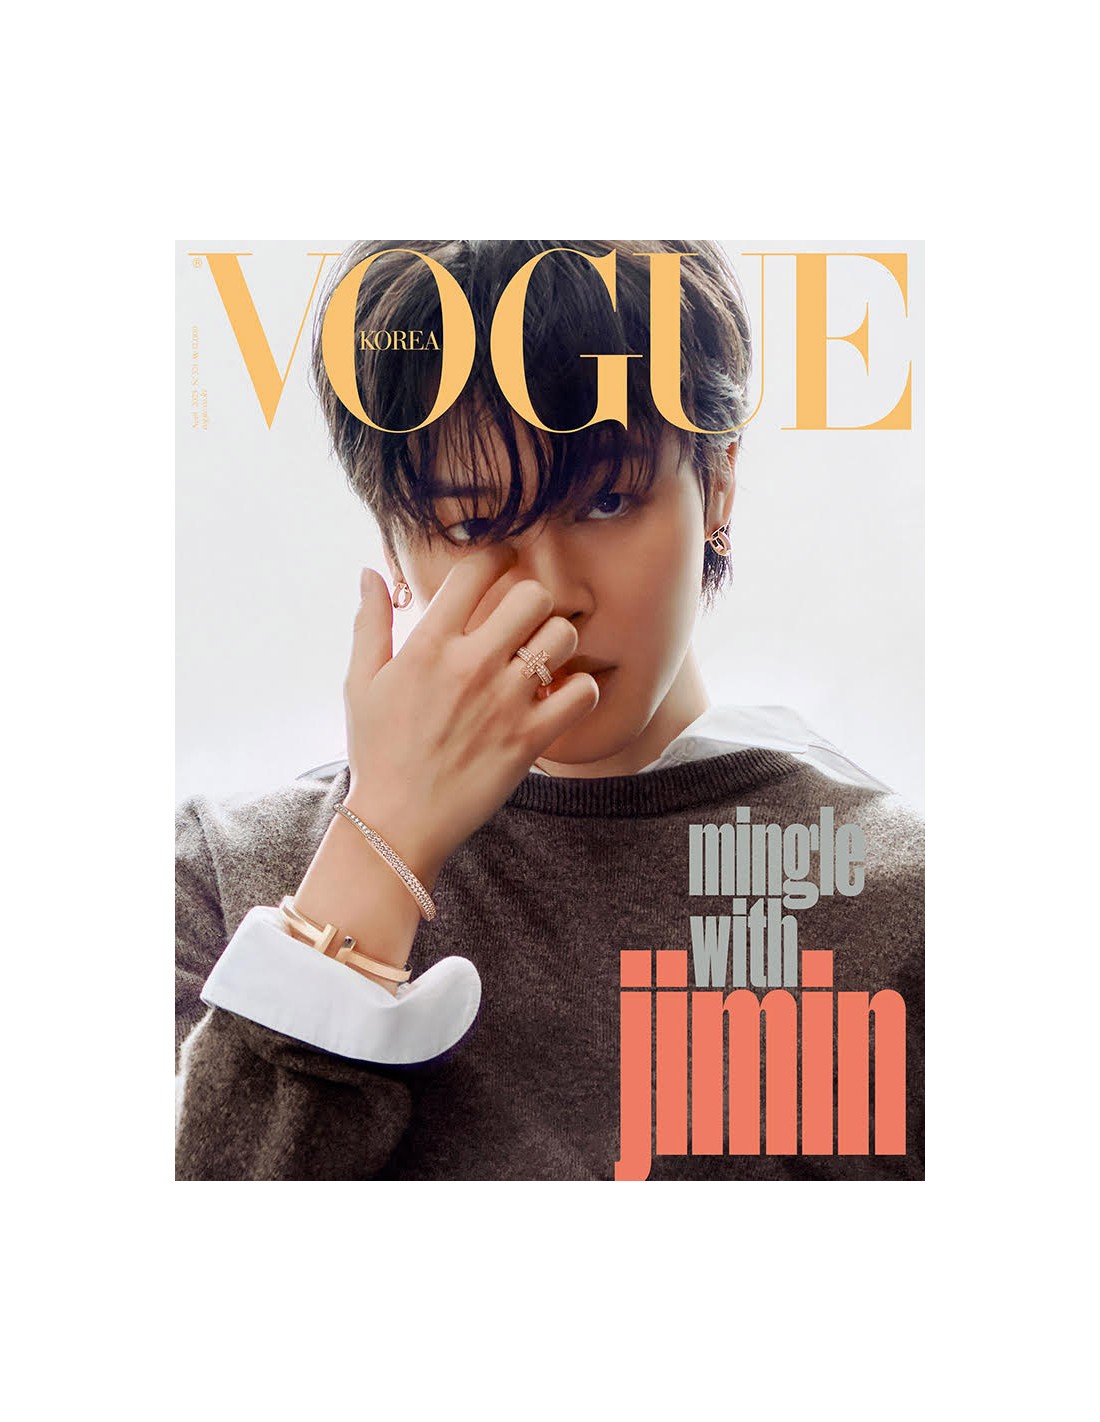 StyleKorea — BTS Jimin for Vogue Korea January 2022.